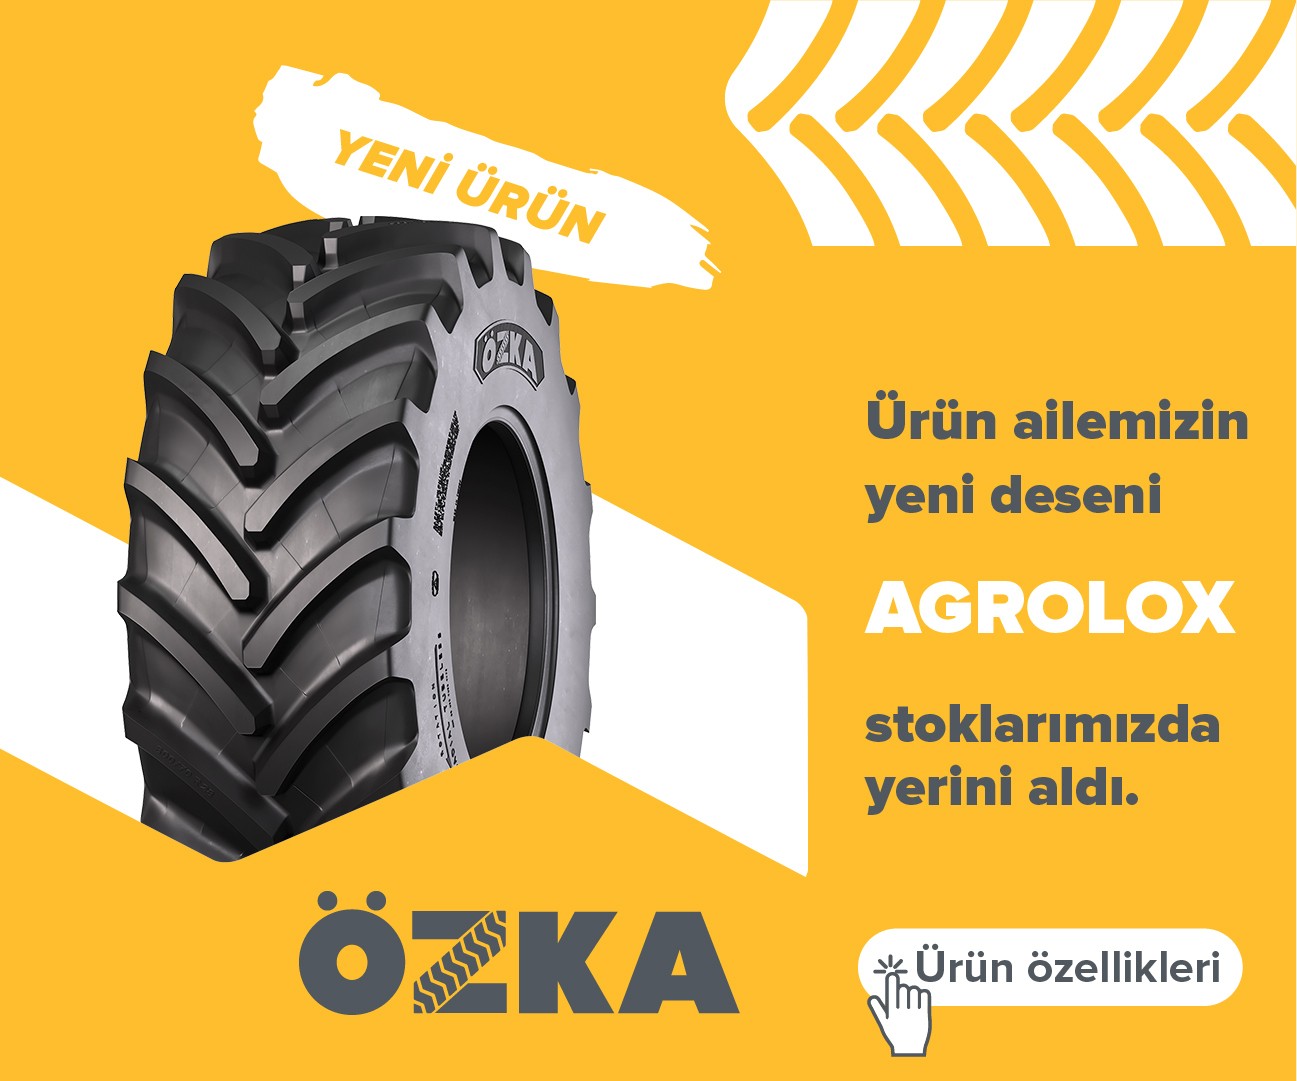 520/70R38 Özka Agrolox - İletişim 0543 440 6410